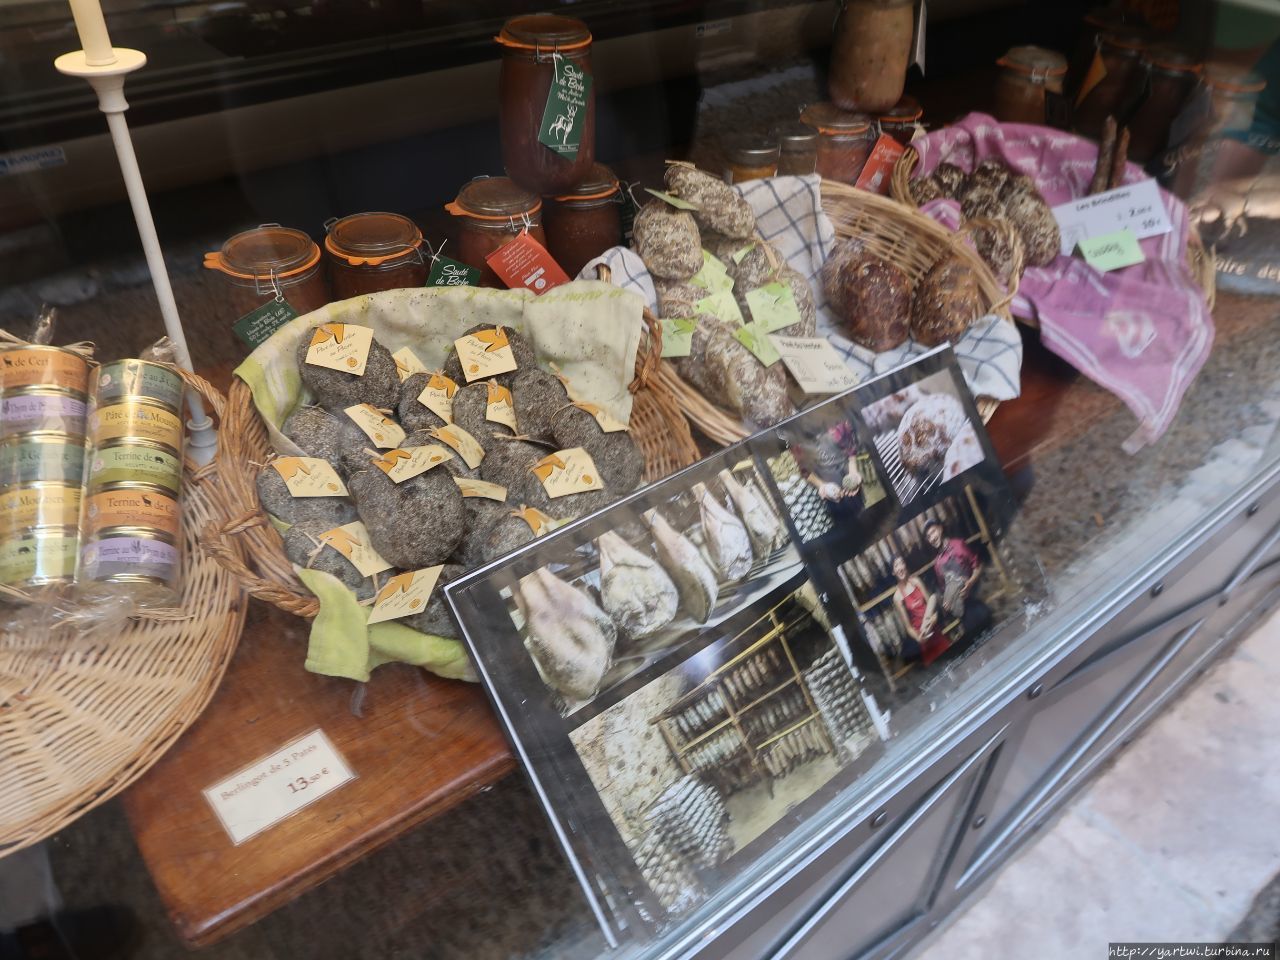 Местные лавки забиты не только фаянсом, пахучими мешочками, но и продовольствием местных производителей. Мустье-Сент-Мари, Франция